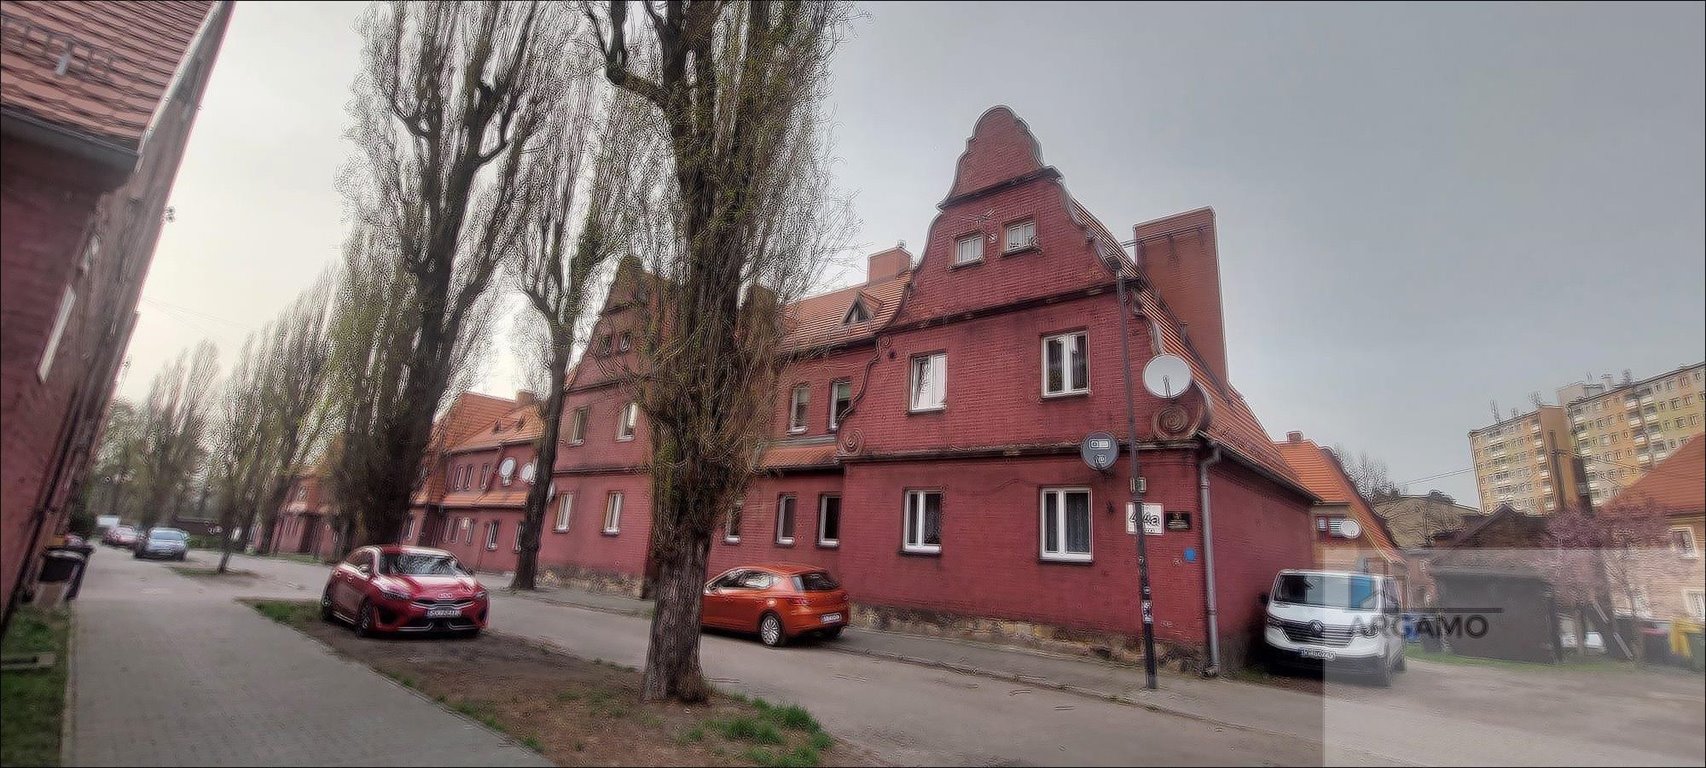 Lokal użytkowy na sprzedaż Ruda Śląska, S. Staszica  41m2 Foto 10